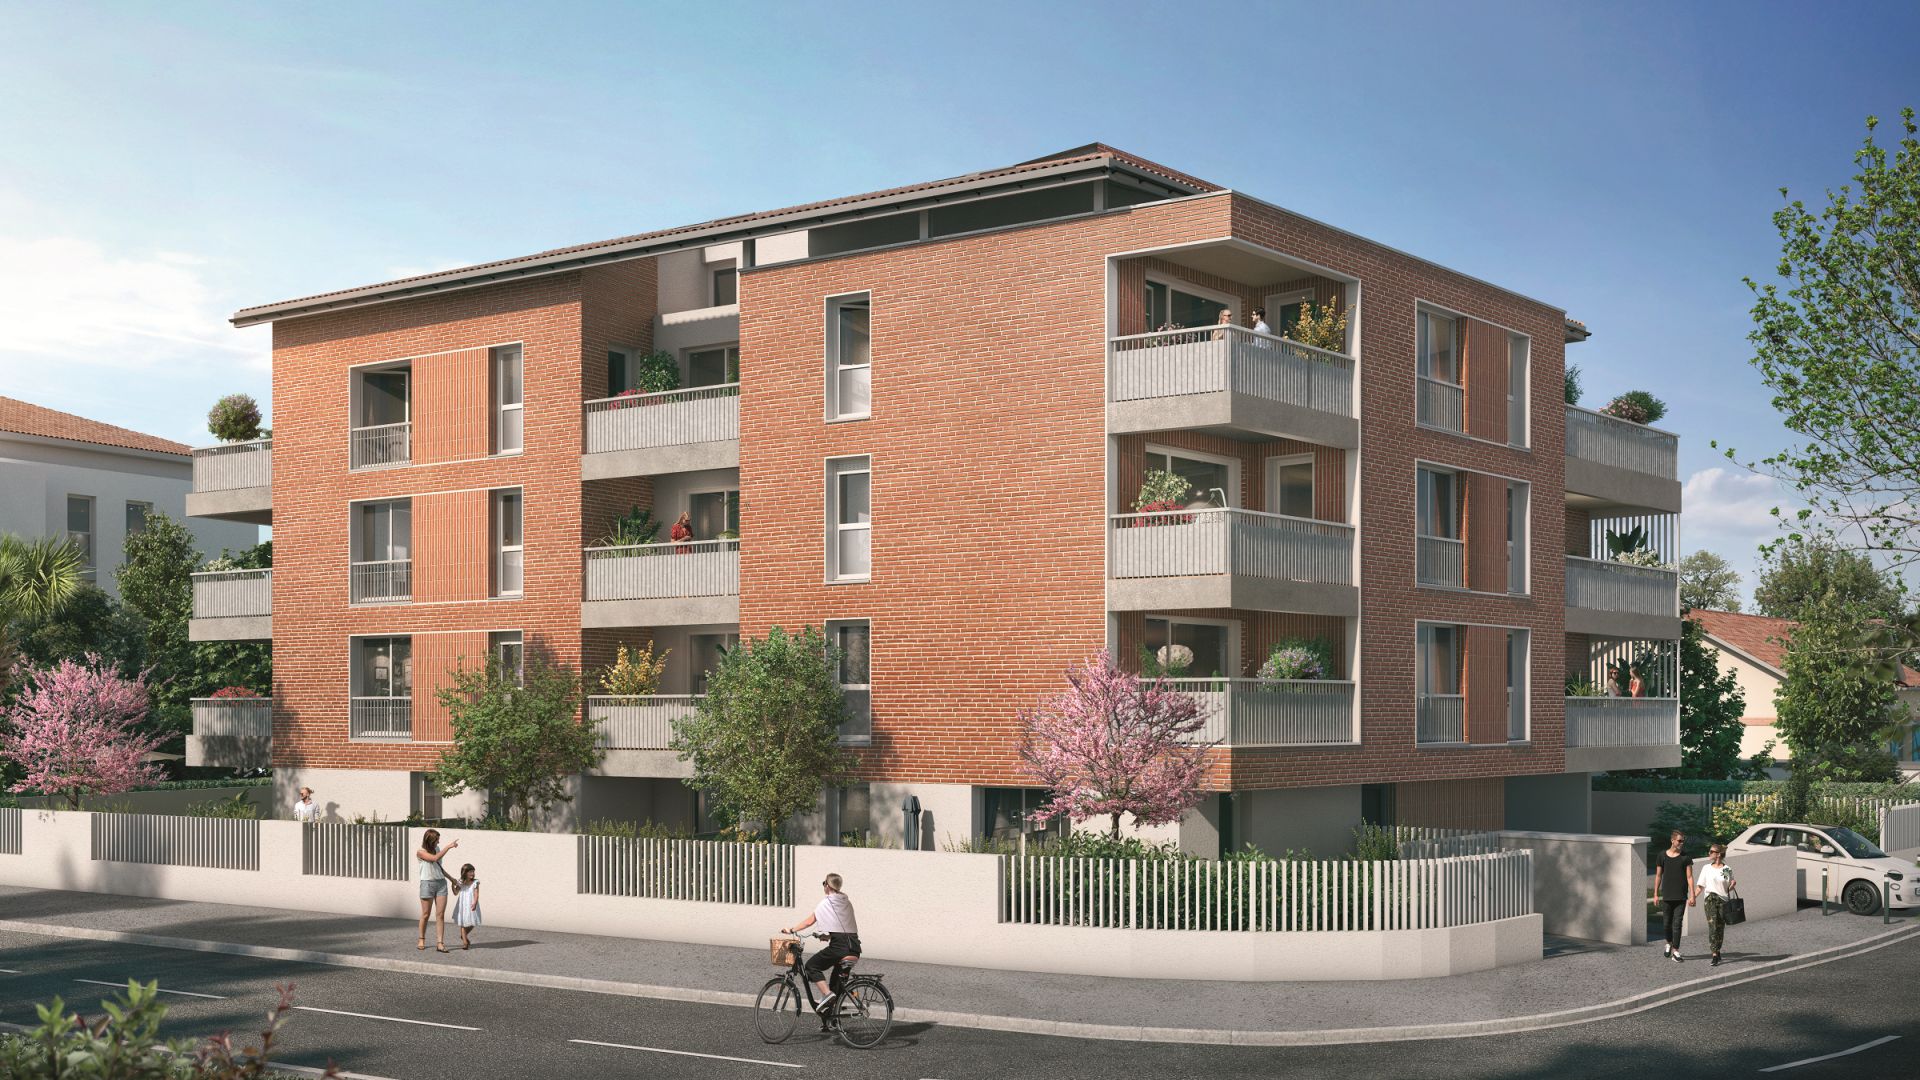 Greencity immobilier - achat appartements neufs du T2 au T4 - Résidence Le First - 31400 Toulouse Saint-Agne